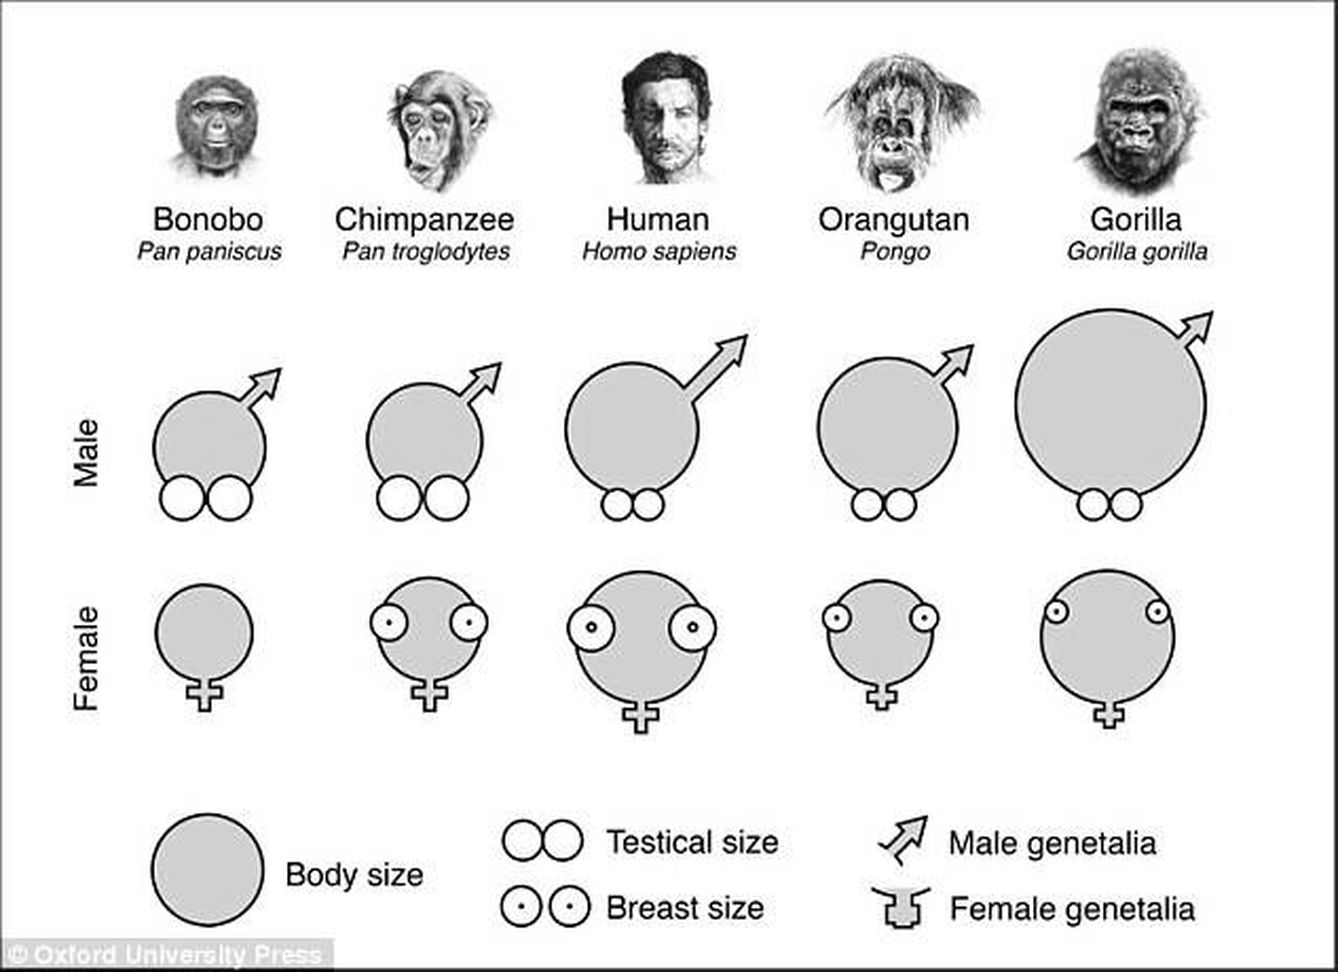 Comparativa genital entre el ser humano y los diferentes simios. ('El tercer chimpancé')